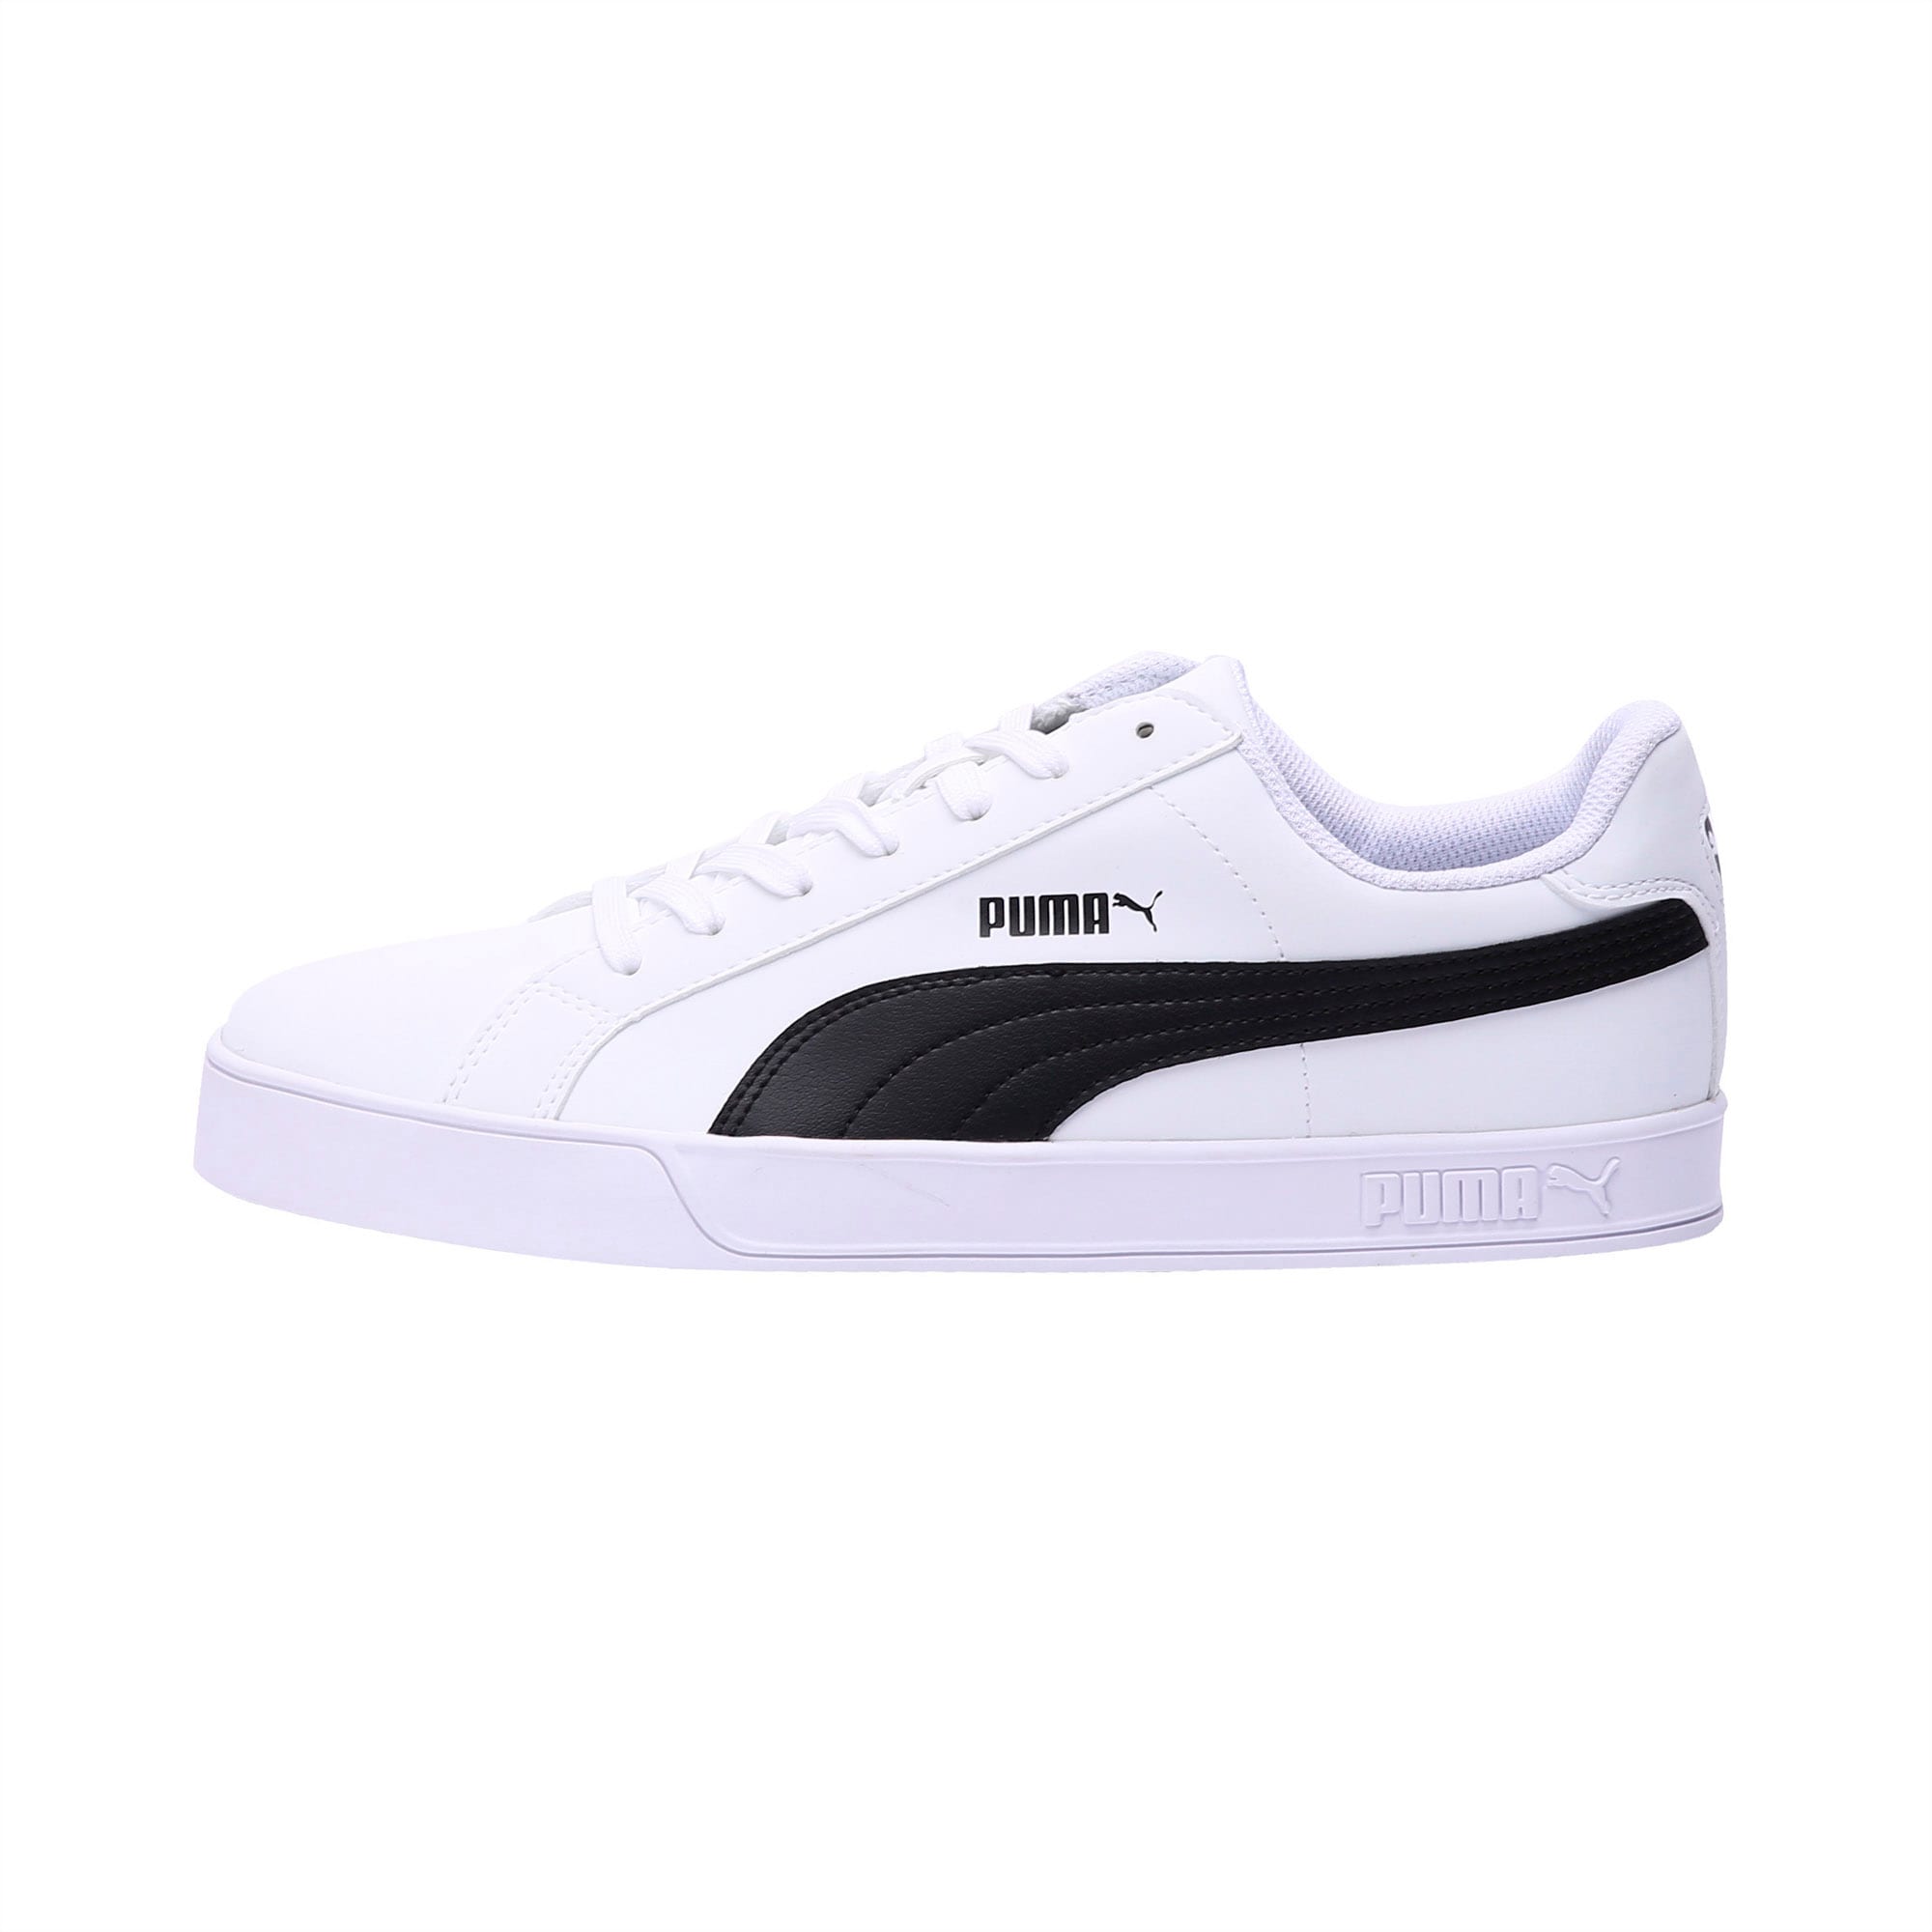 PUMA Smash Vulc Trainers | white-black | Shoes | PUMA